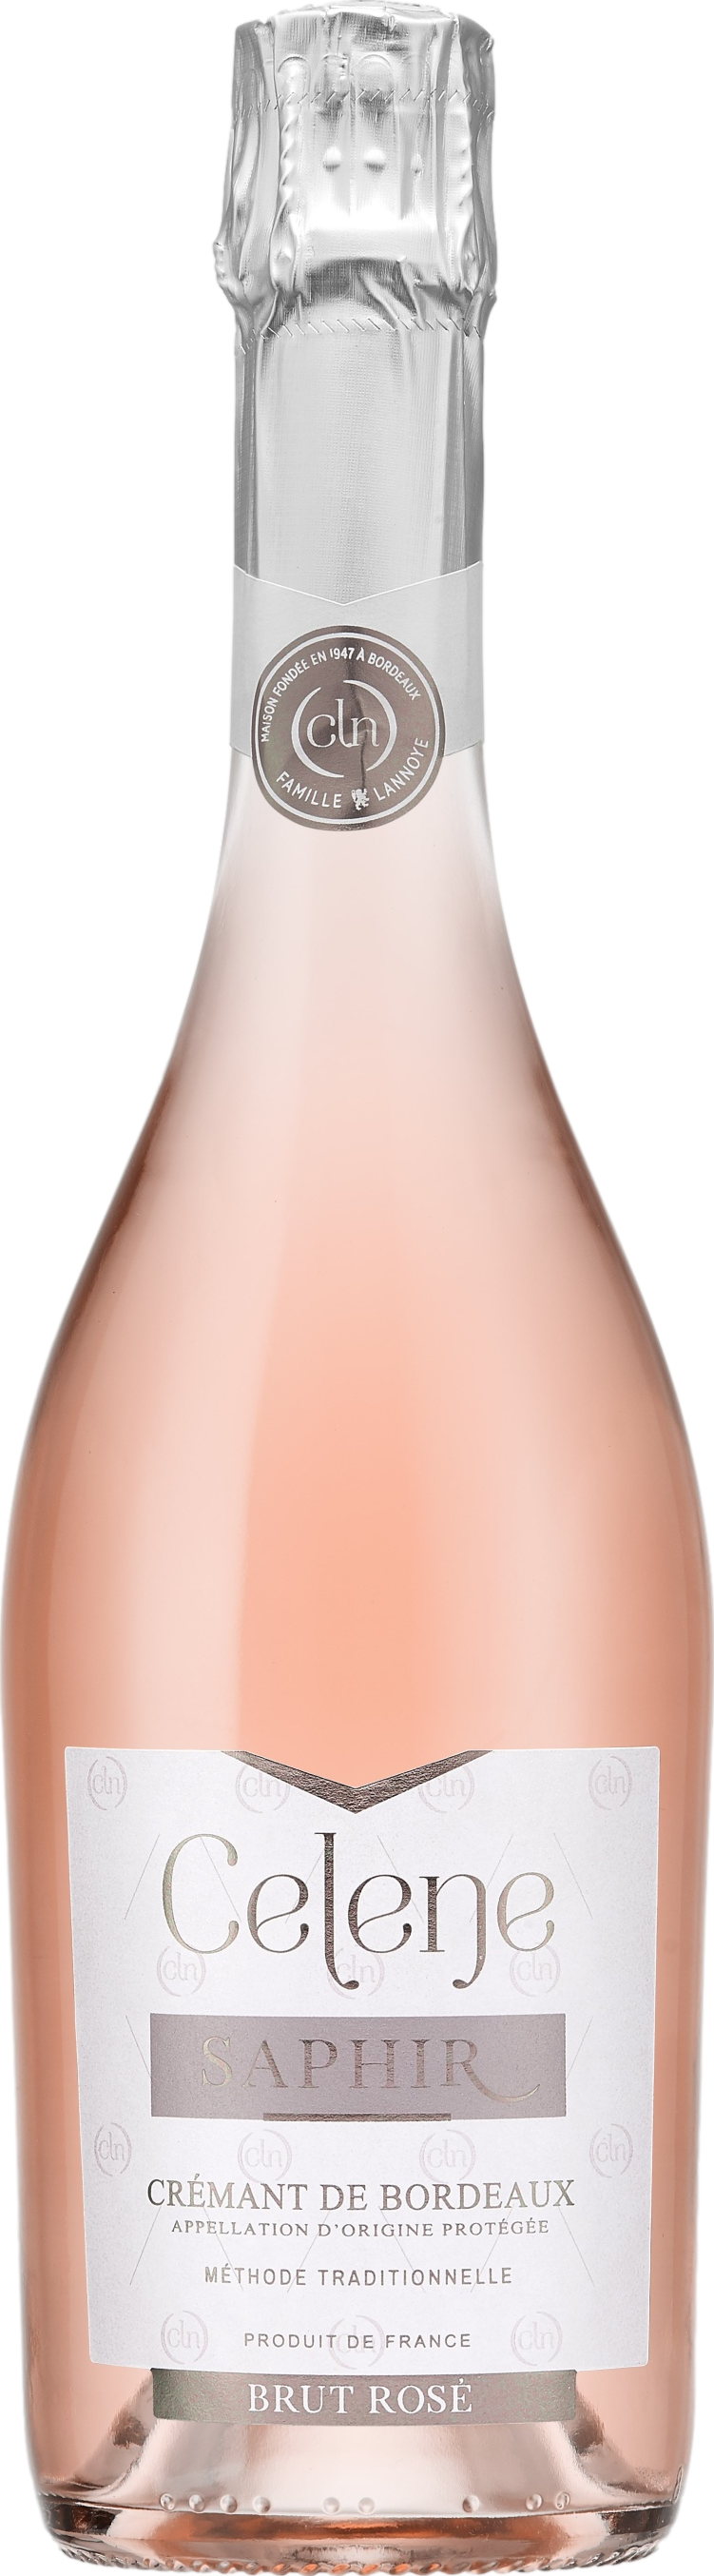 Celene Saphir Cremant de Bordeaux Brut Rose Šumivé 12.0% 0.75 l